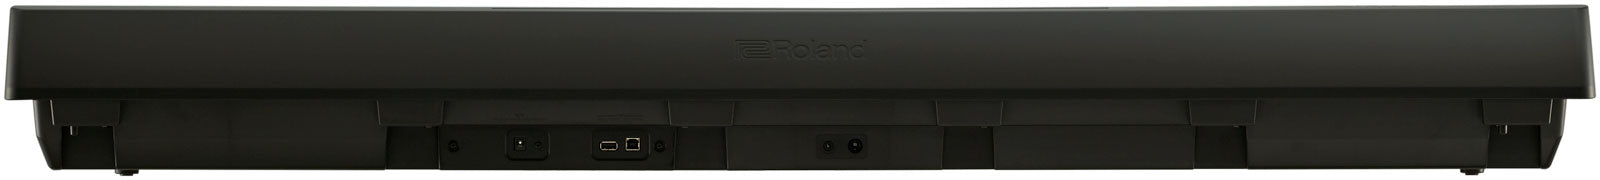 Roland FP-10-BK Portable Digital Piano - Fair Deal Music